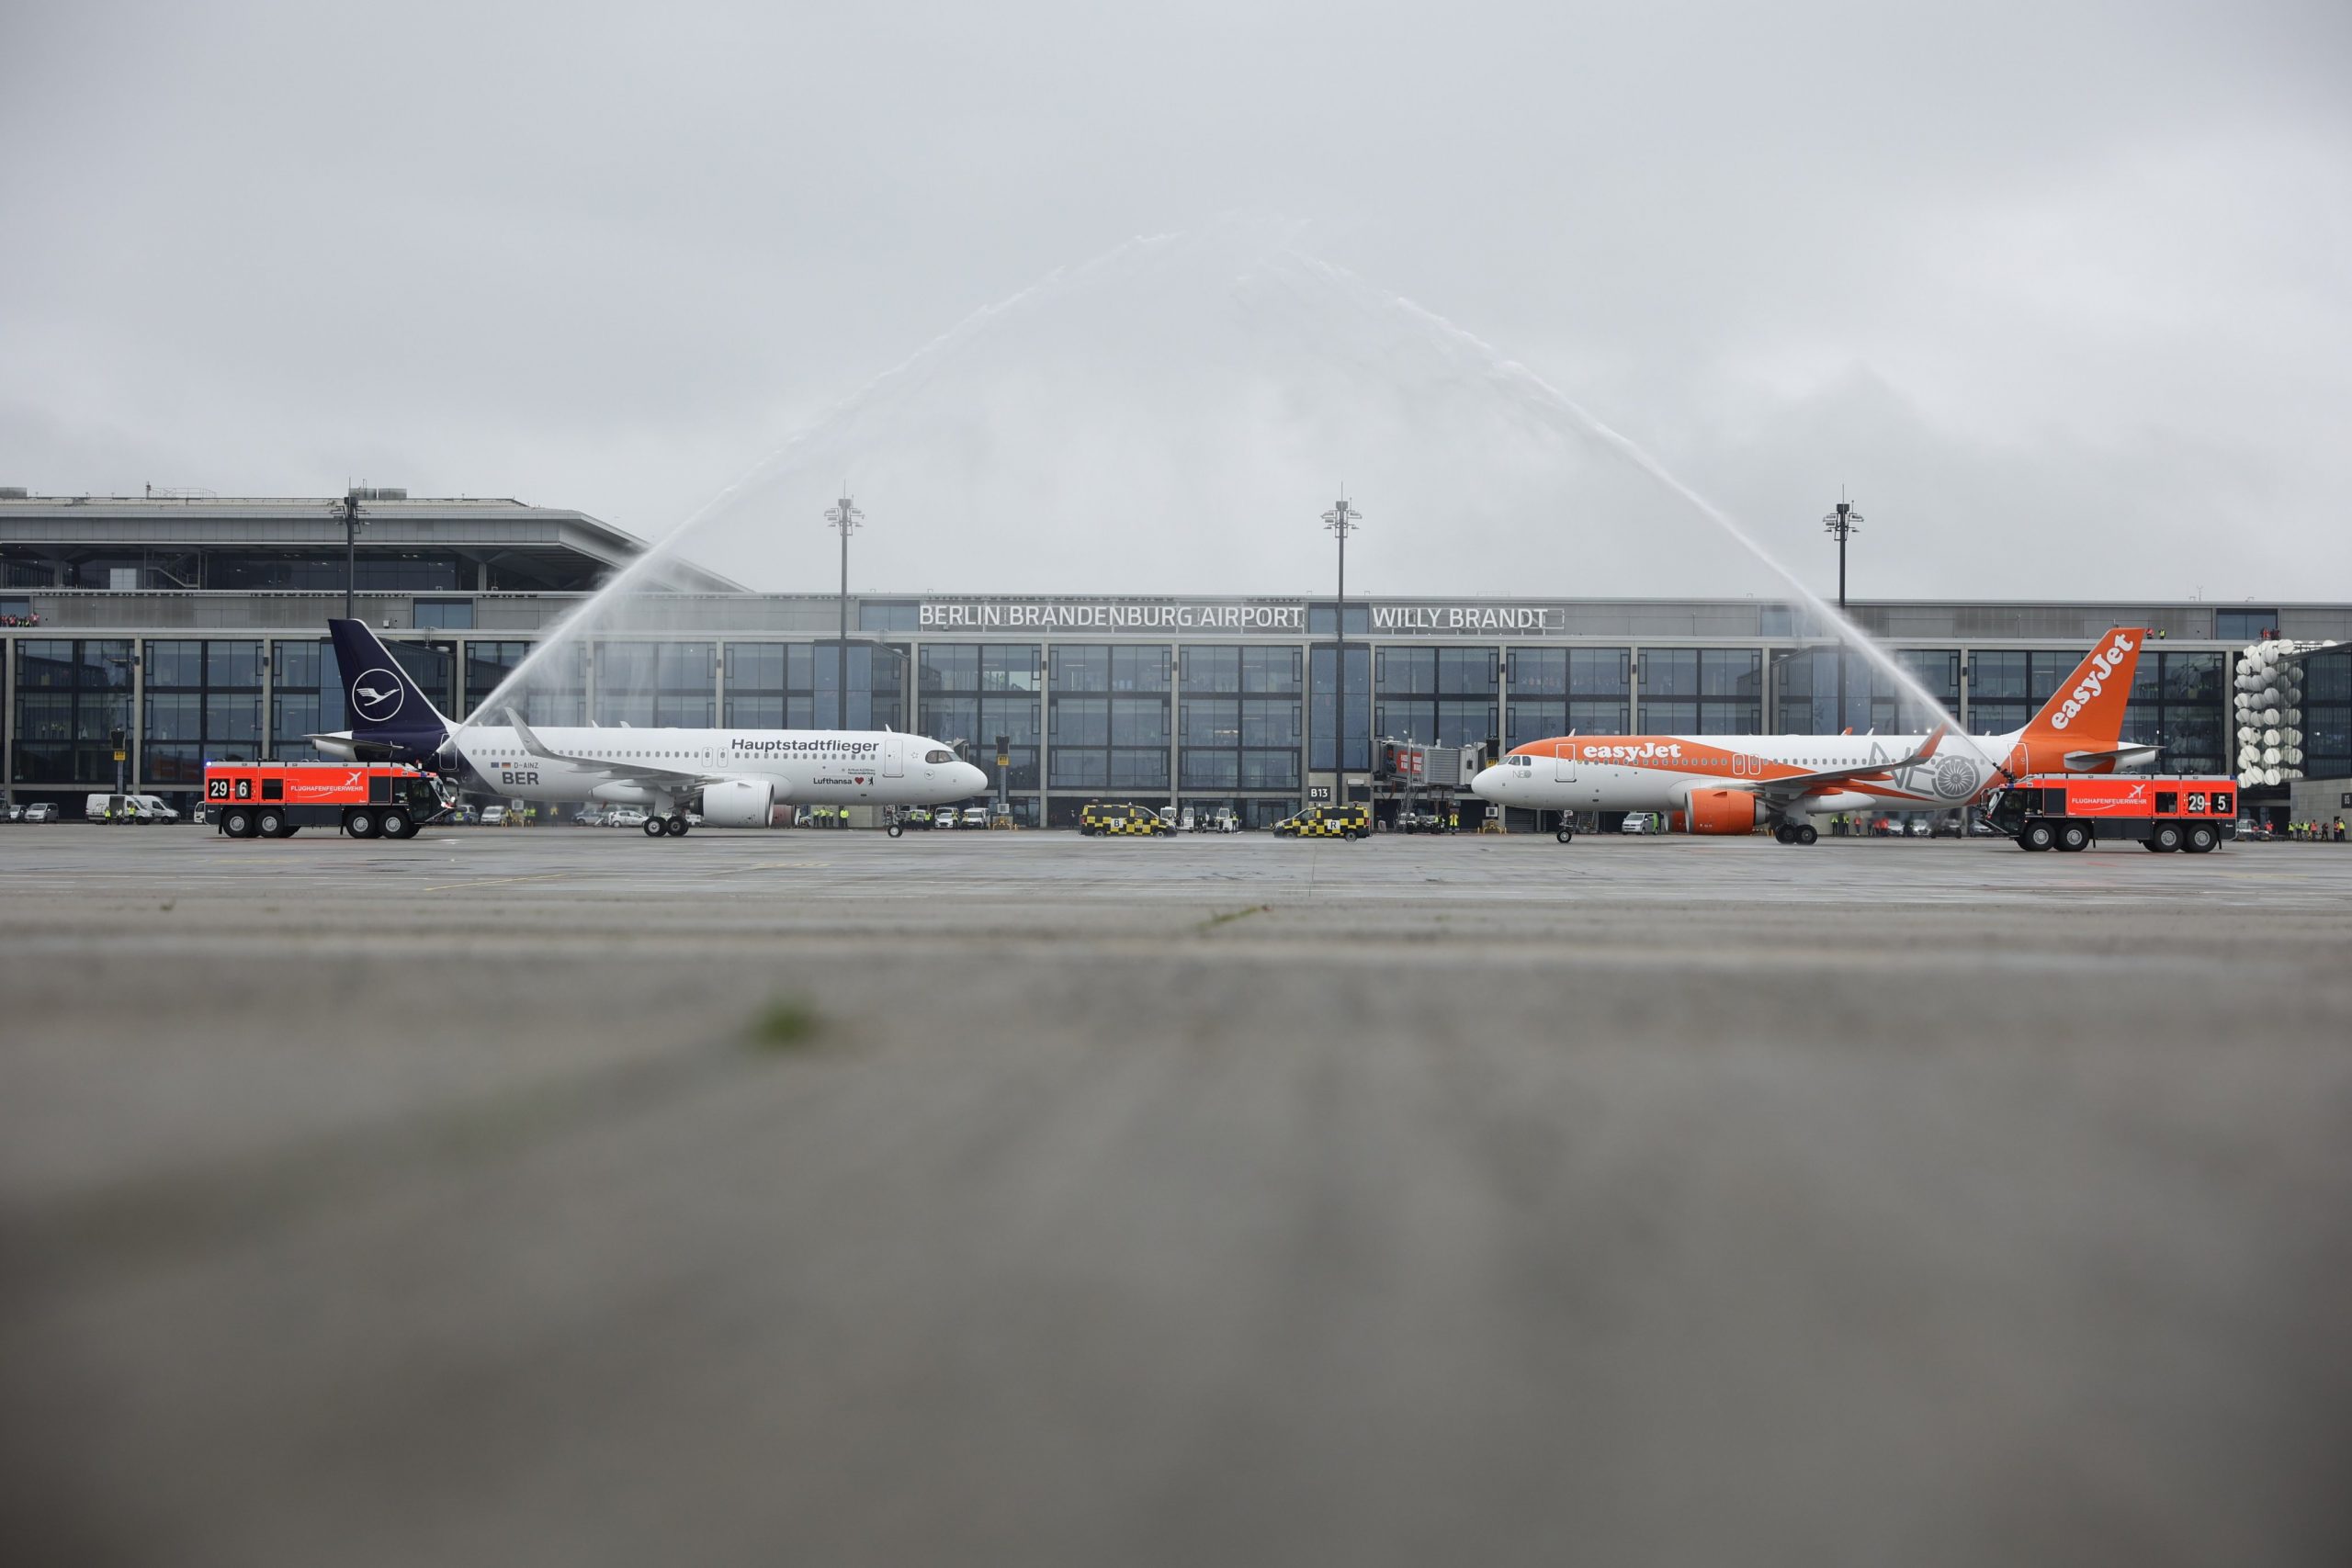 Letadla Lufthansy a easyJetu po příletu na nové letiště v Berlíně. Foto: BER